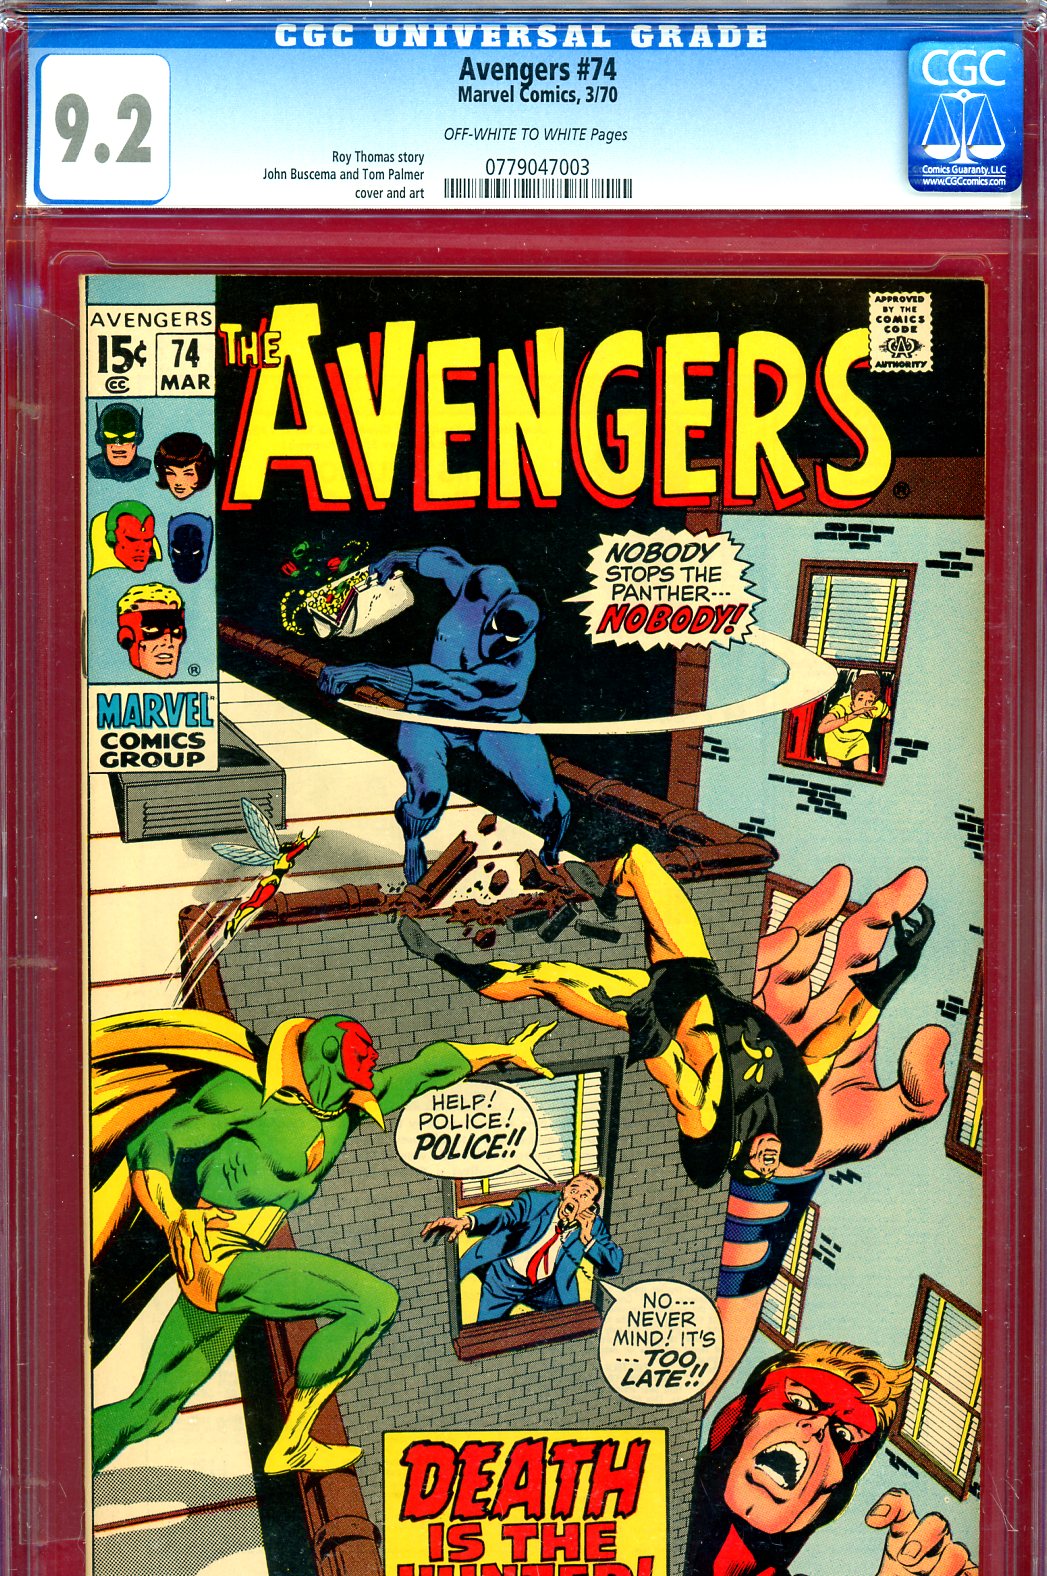 Avengers #74 CGC 9.2 ow/w